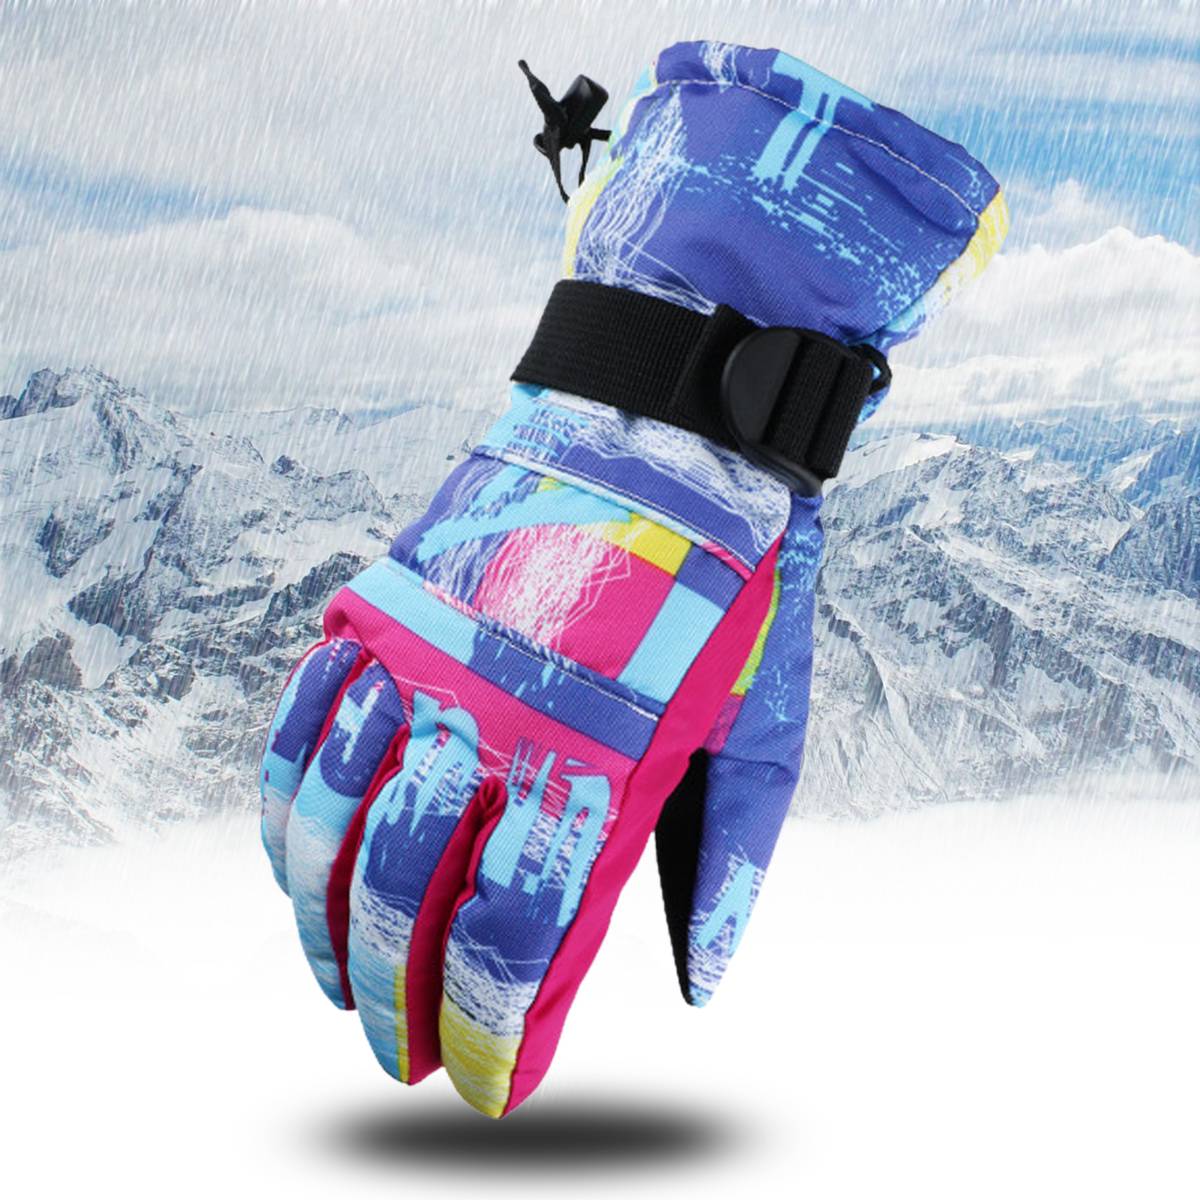 ????топ лучших надежных перчаток для катания на снегоходах и квадроциклах